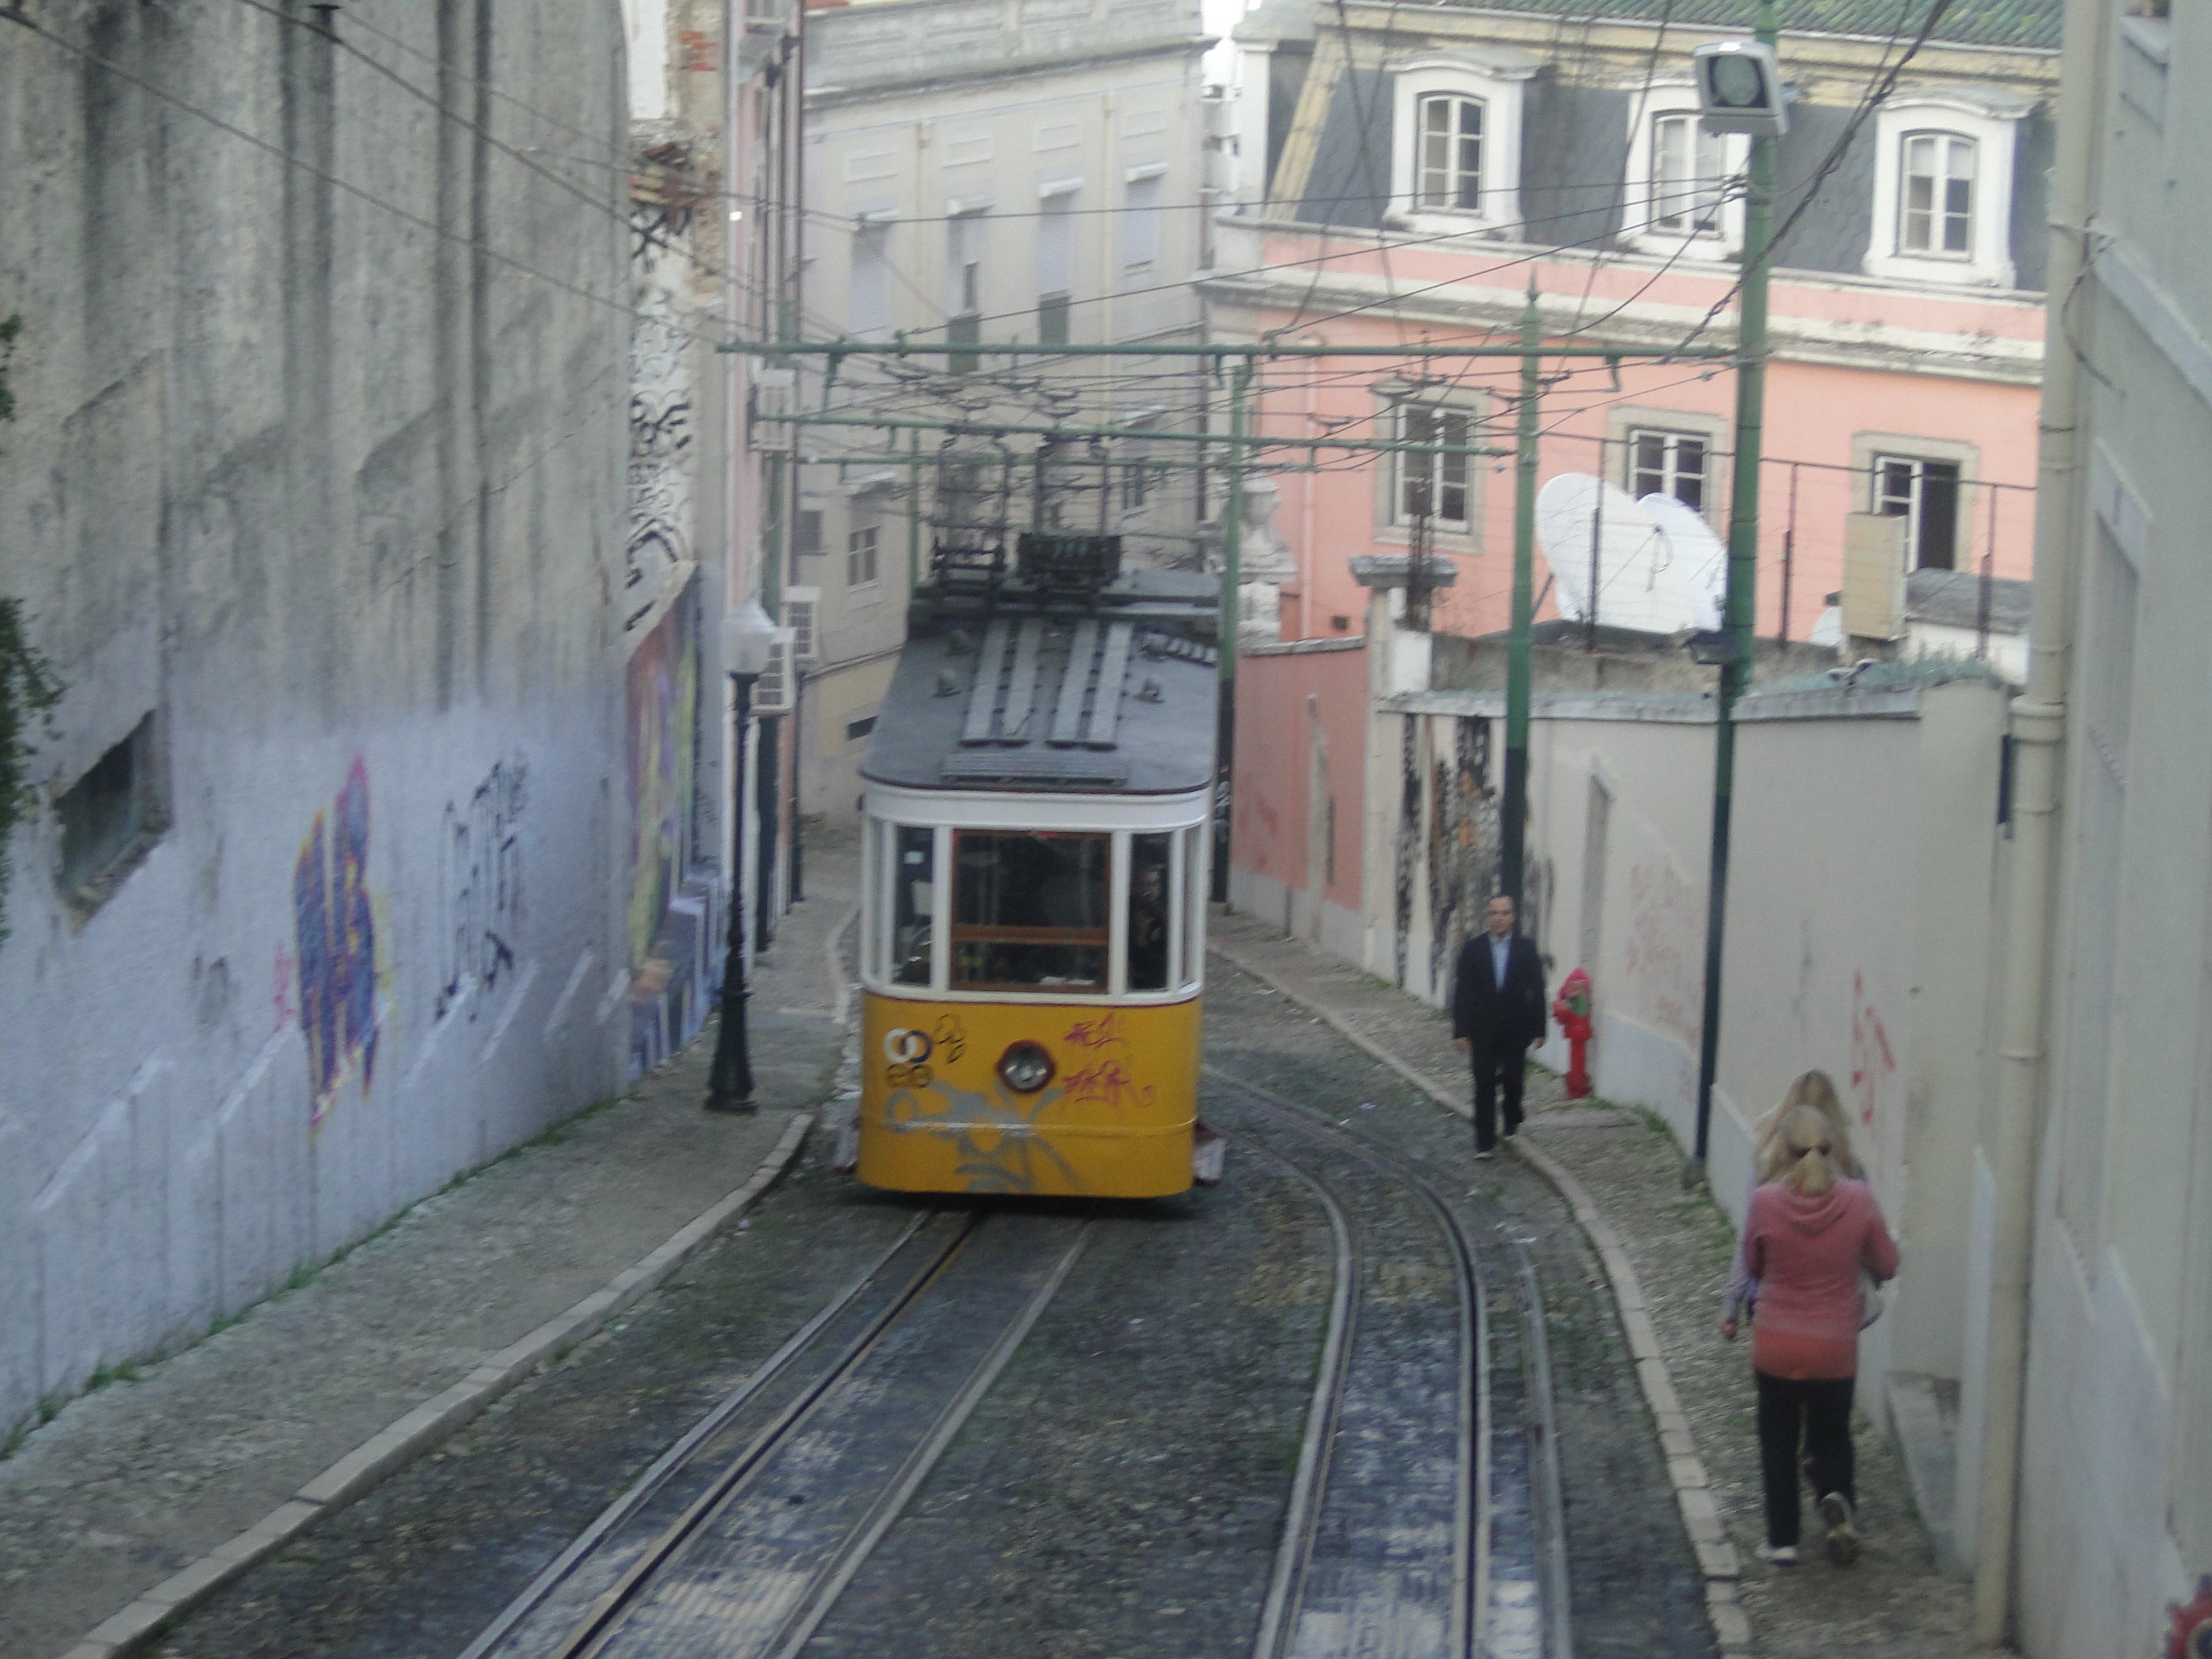 Em ladeiras apertas, o eléctrico mantém a tradição em Lisboa